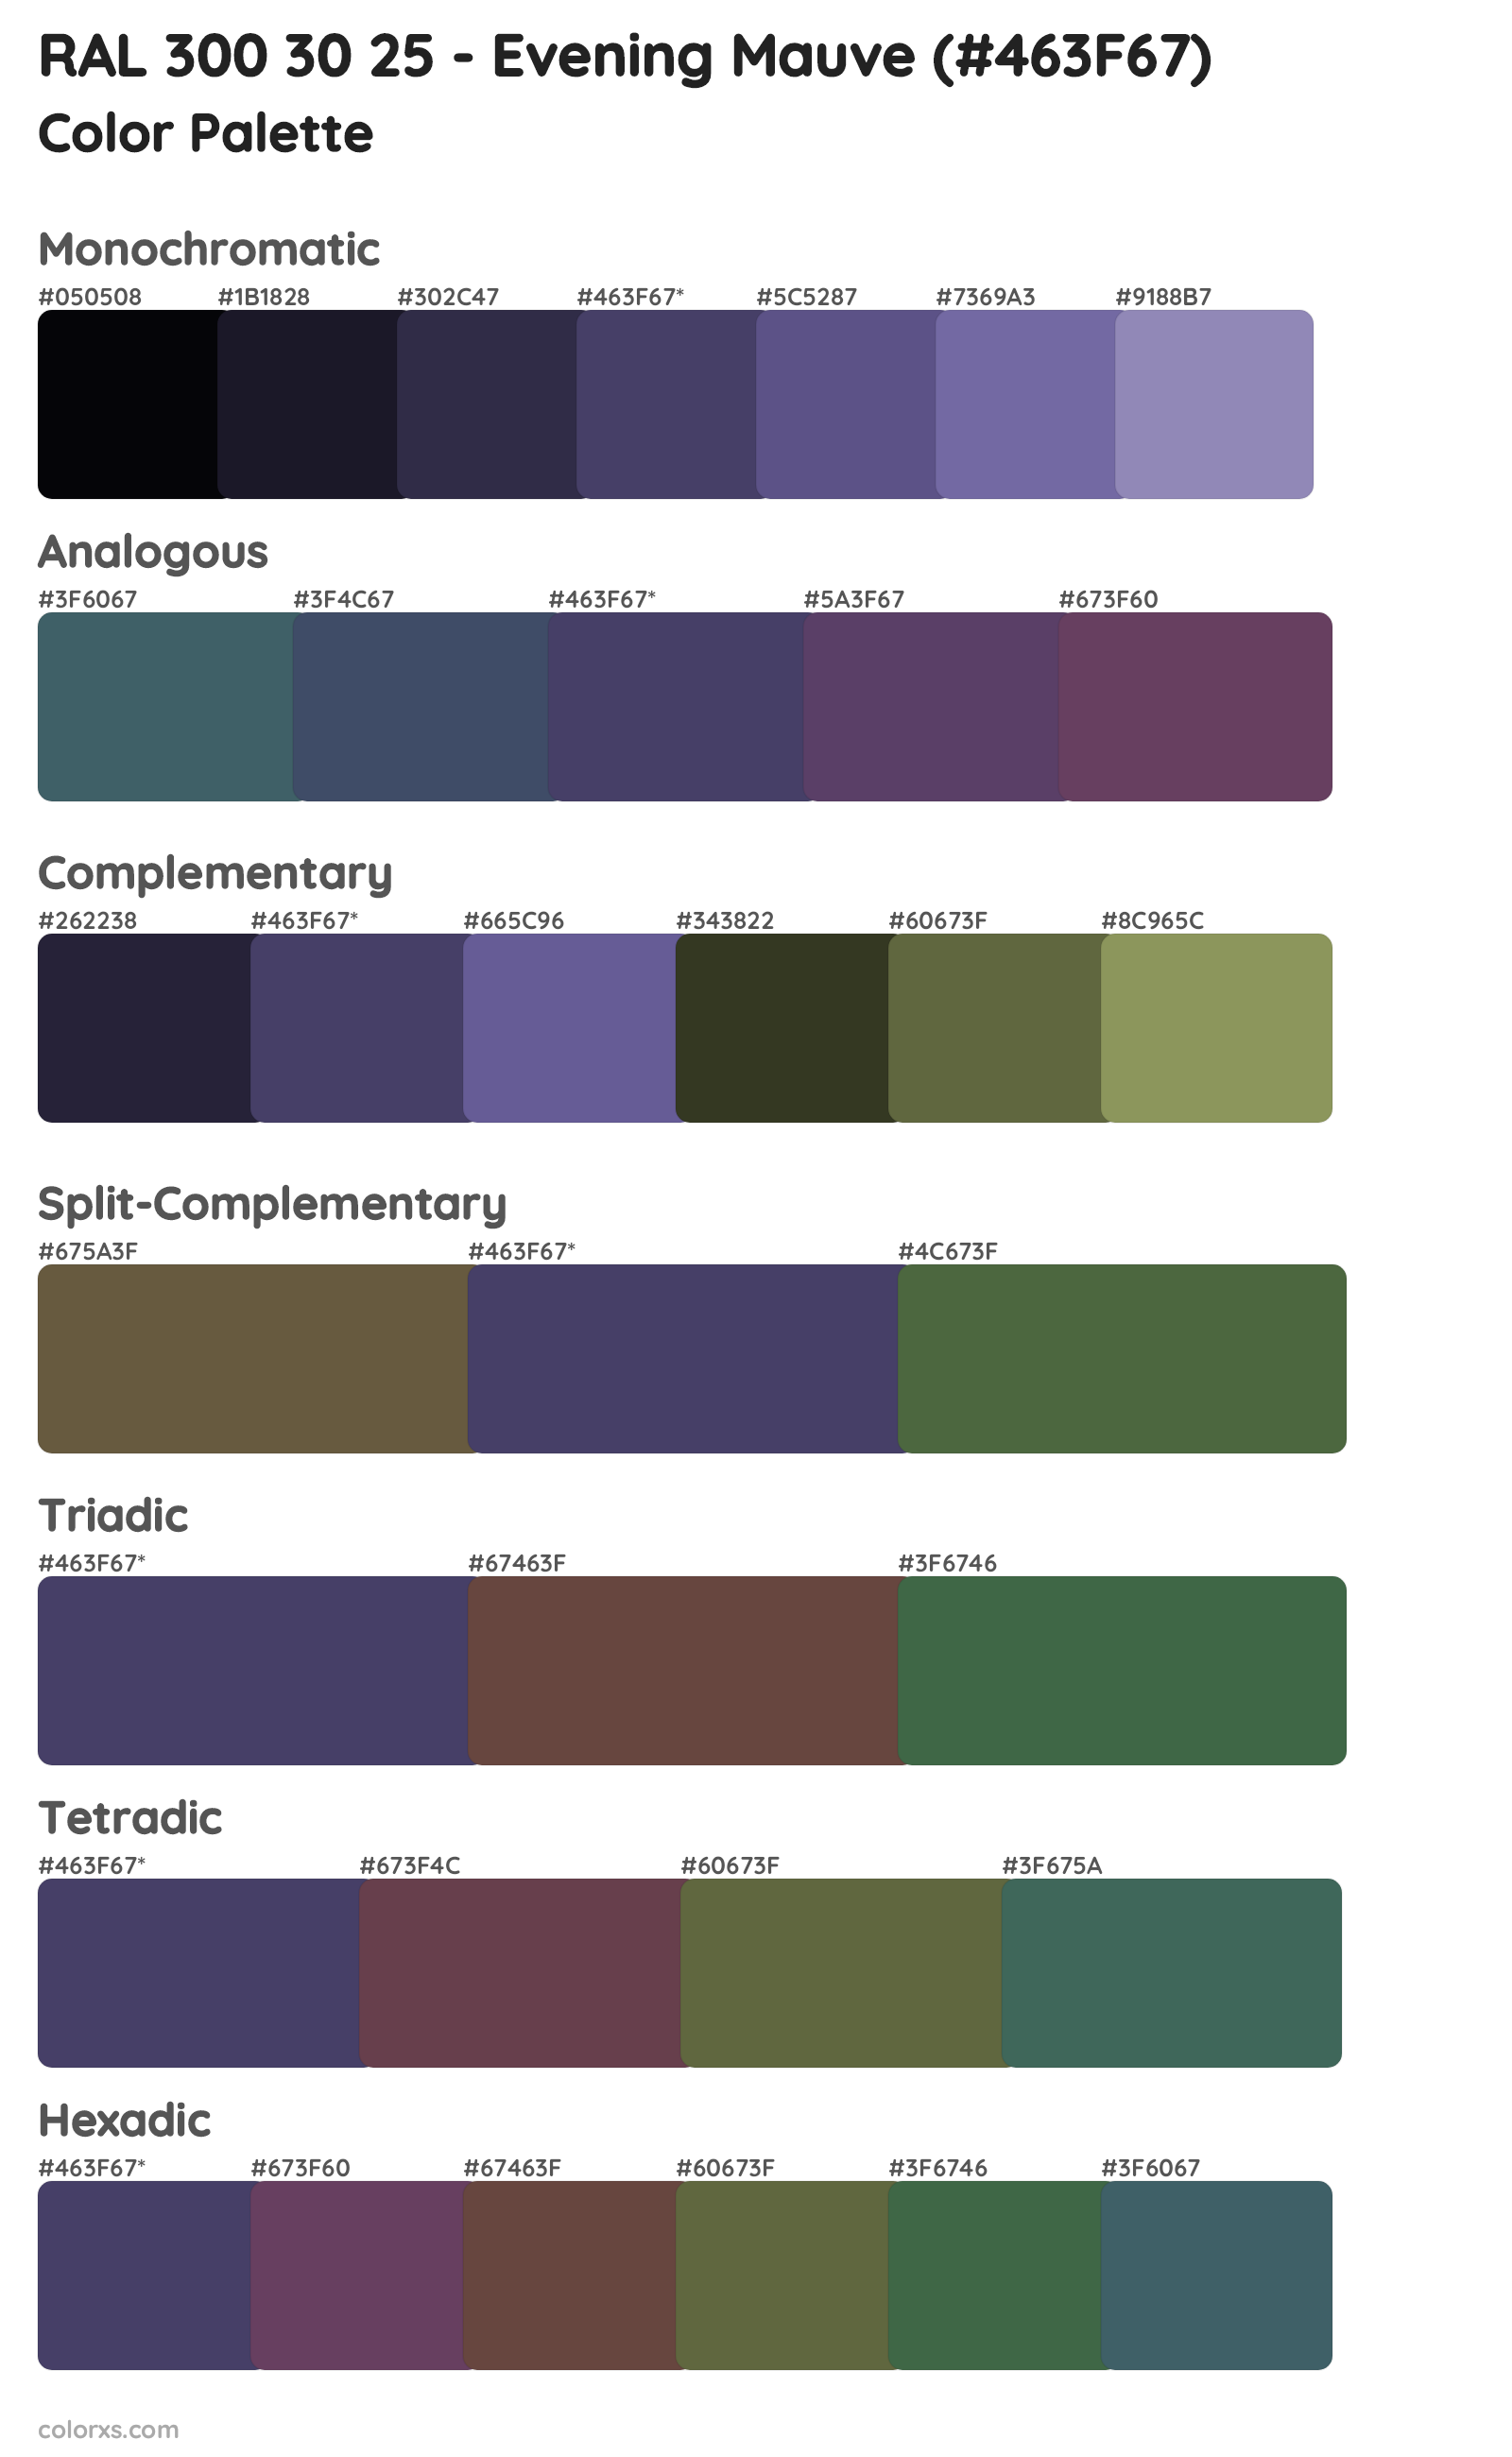 RAL 300 30 25 - Evening Mauve Color Scheme Palettes